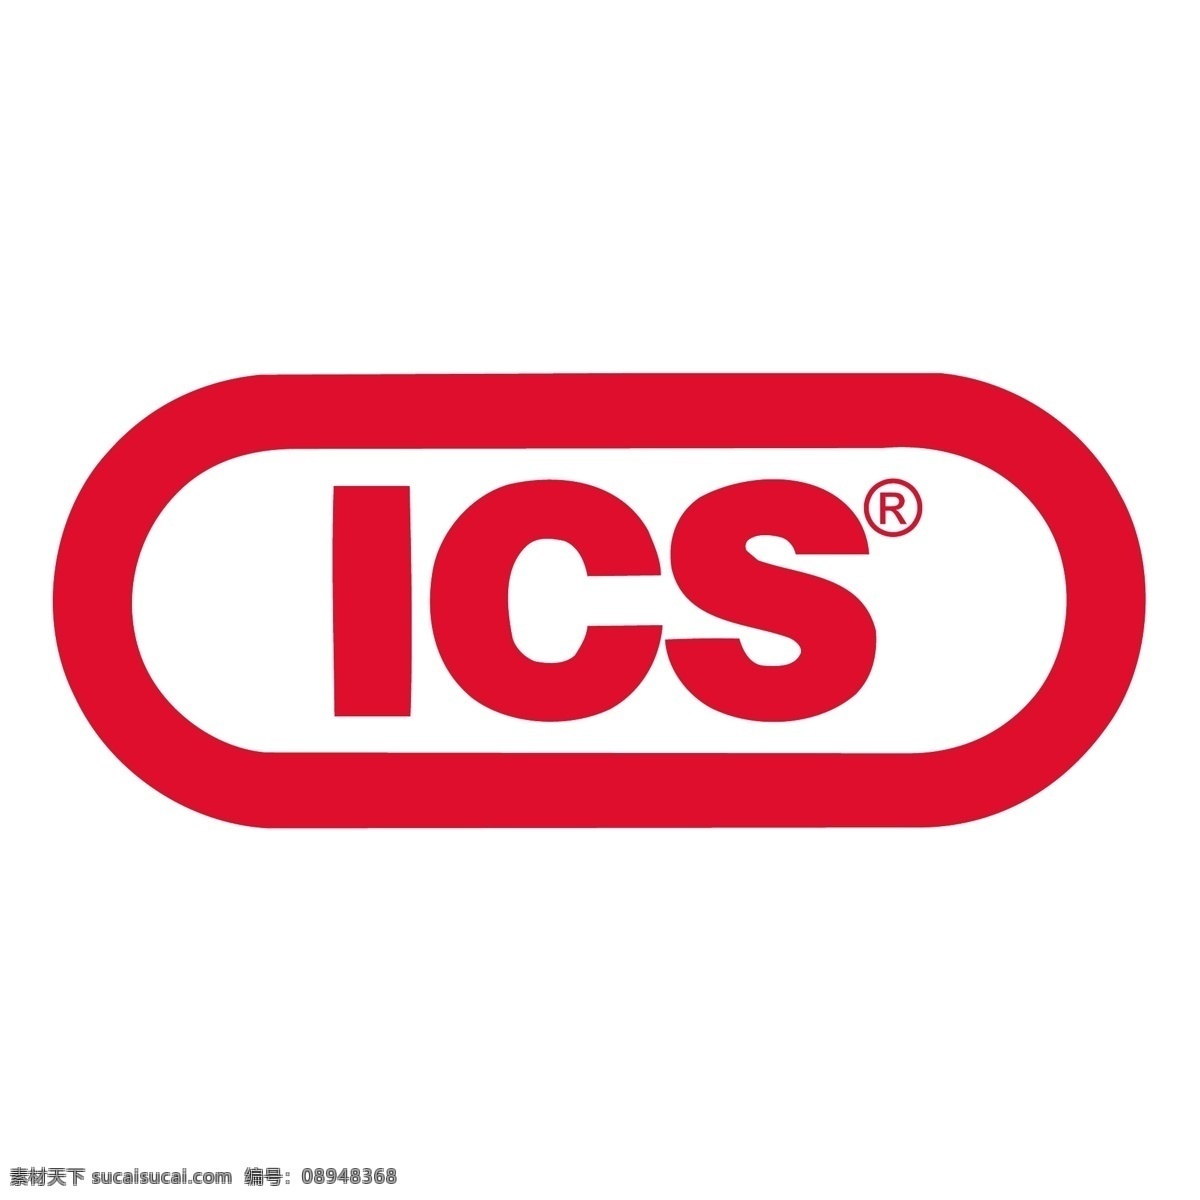 矢量标志 集成电路 芯片 标识 标识向量 向量的ic ic矢量标志 ics布拉沃 标志 集成电路ic 向量 矢量图 建筑家居